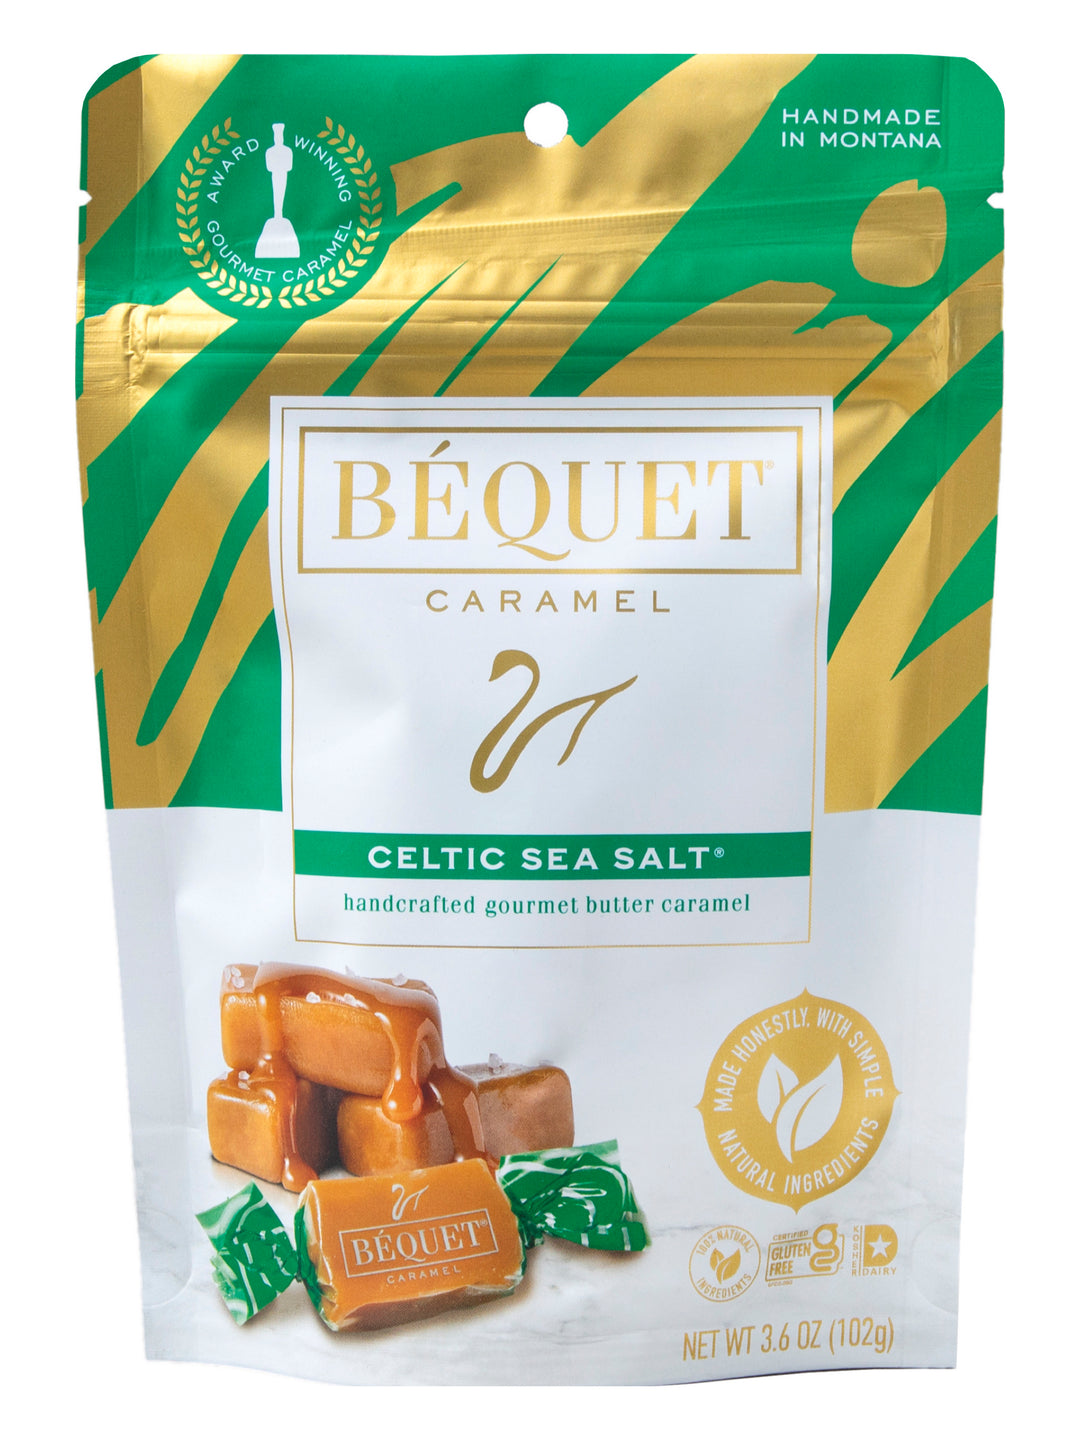 Celtic Sea Salt (4 oz)